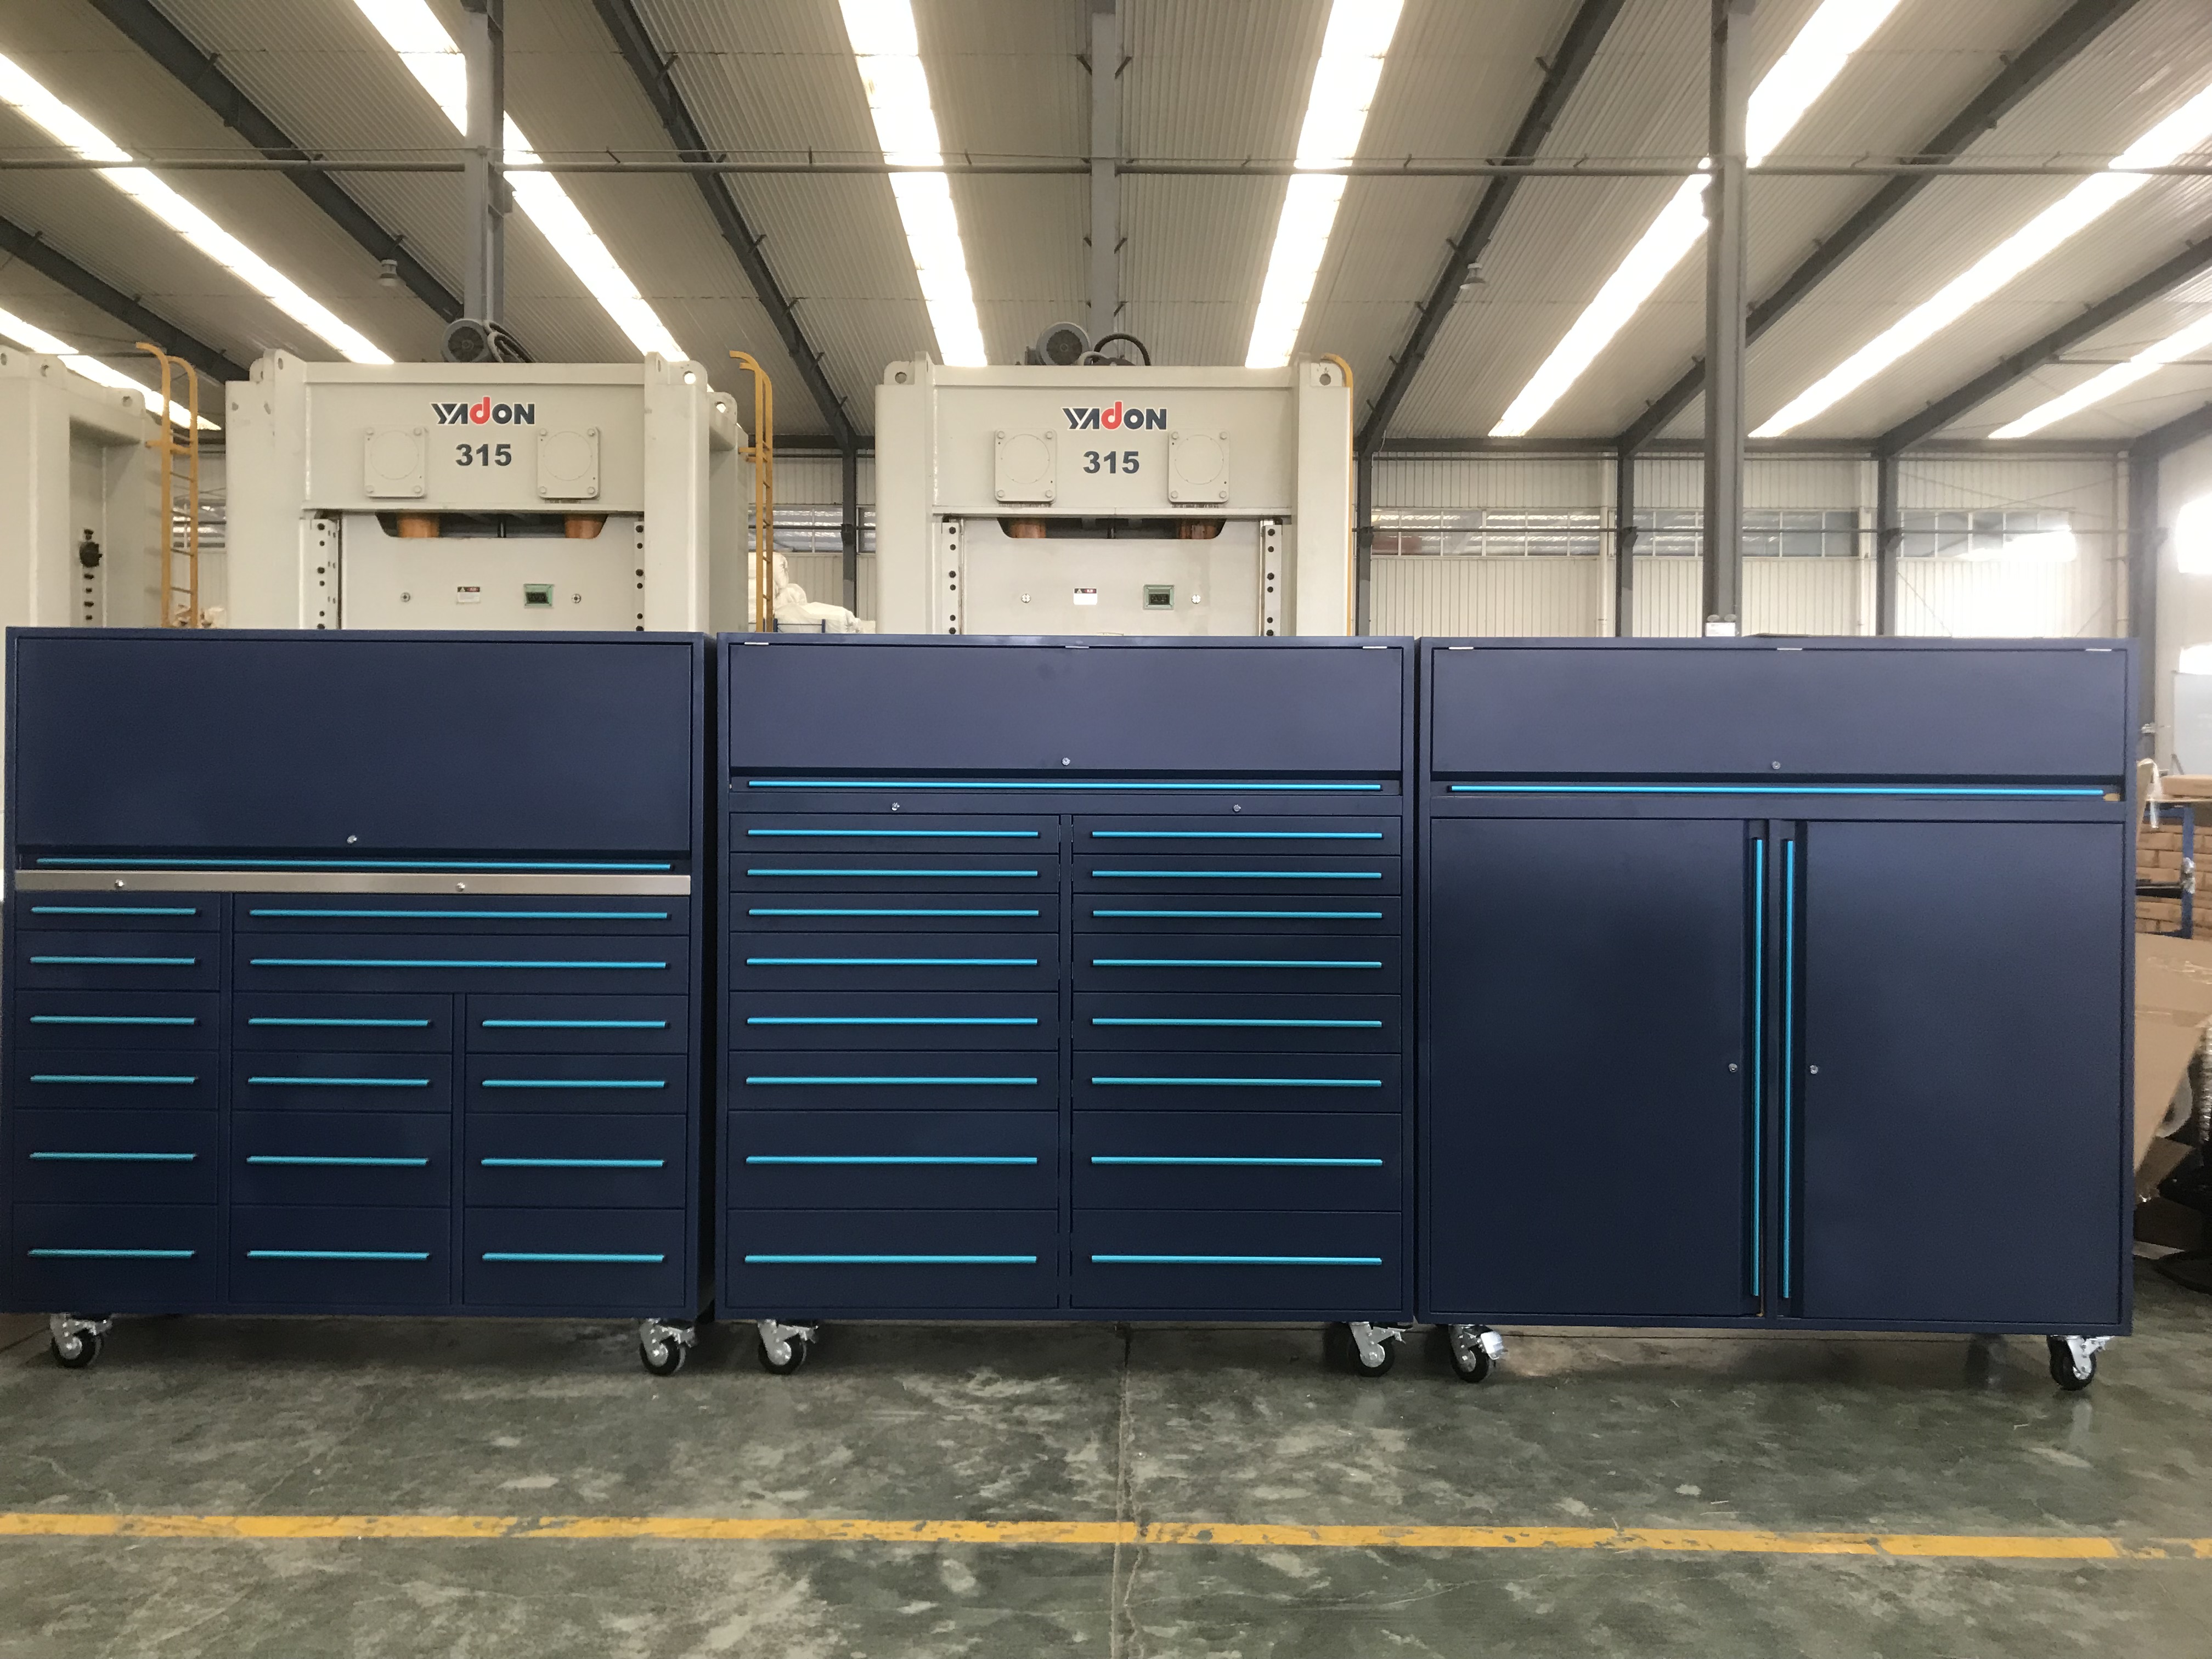 La société CYJY lance une nouvelle armoire à outils combinée pour garage, qui a été produite et prête à être expédiée.